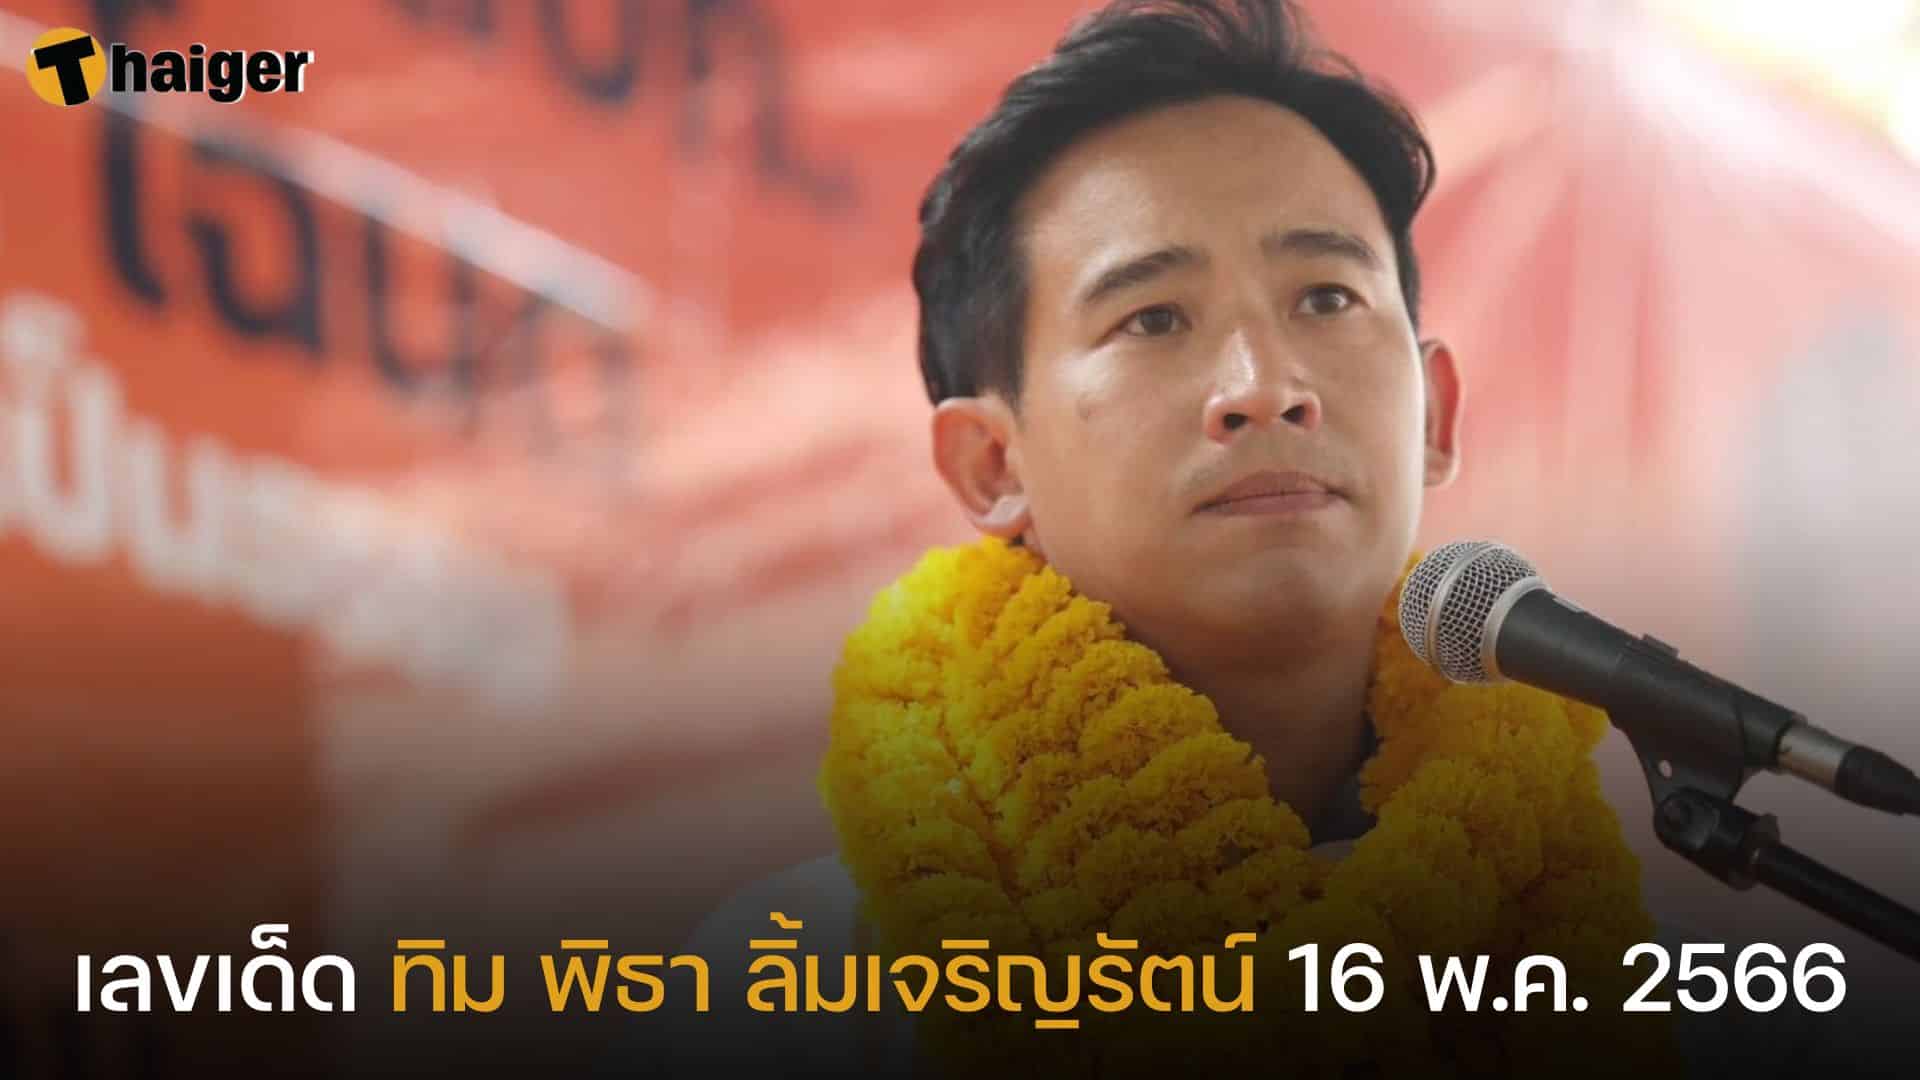 คอหวยเก็งเลขเด็ด ทิม พิธา ว่าที่นายกรัฐมนตรีคนใหม่ของไทย | Thaiger ข่าวไทย